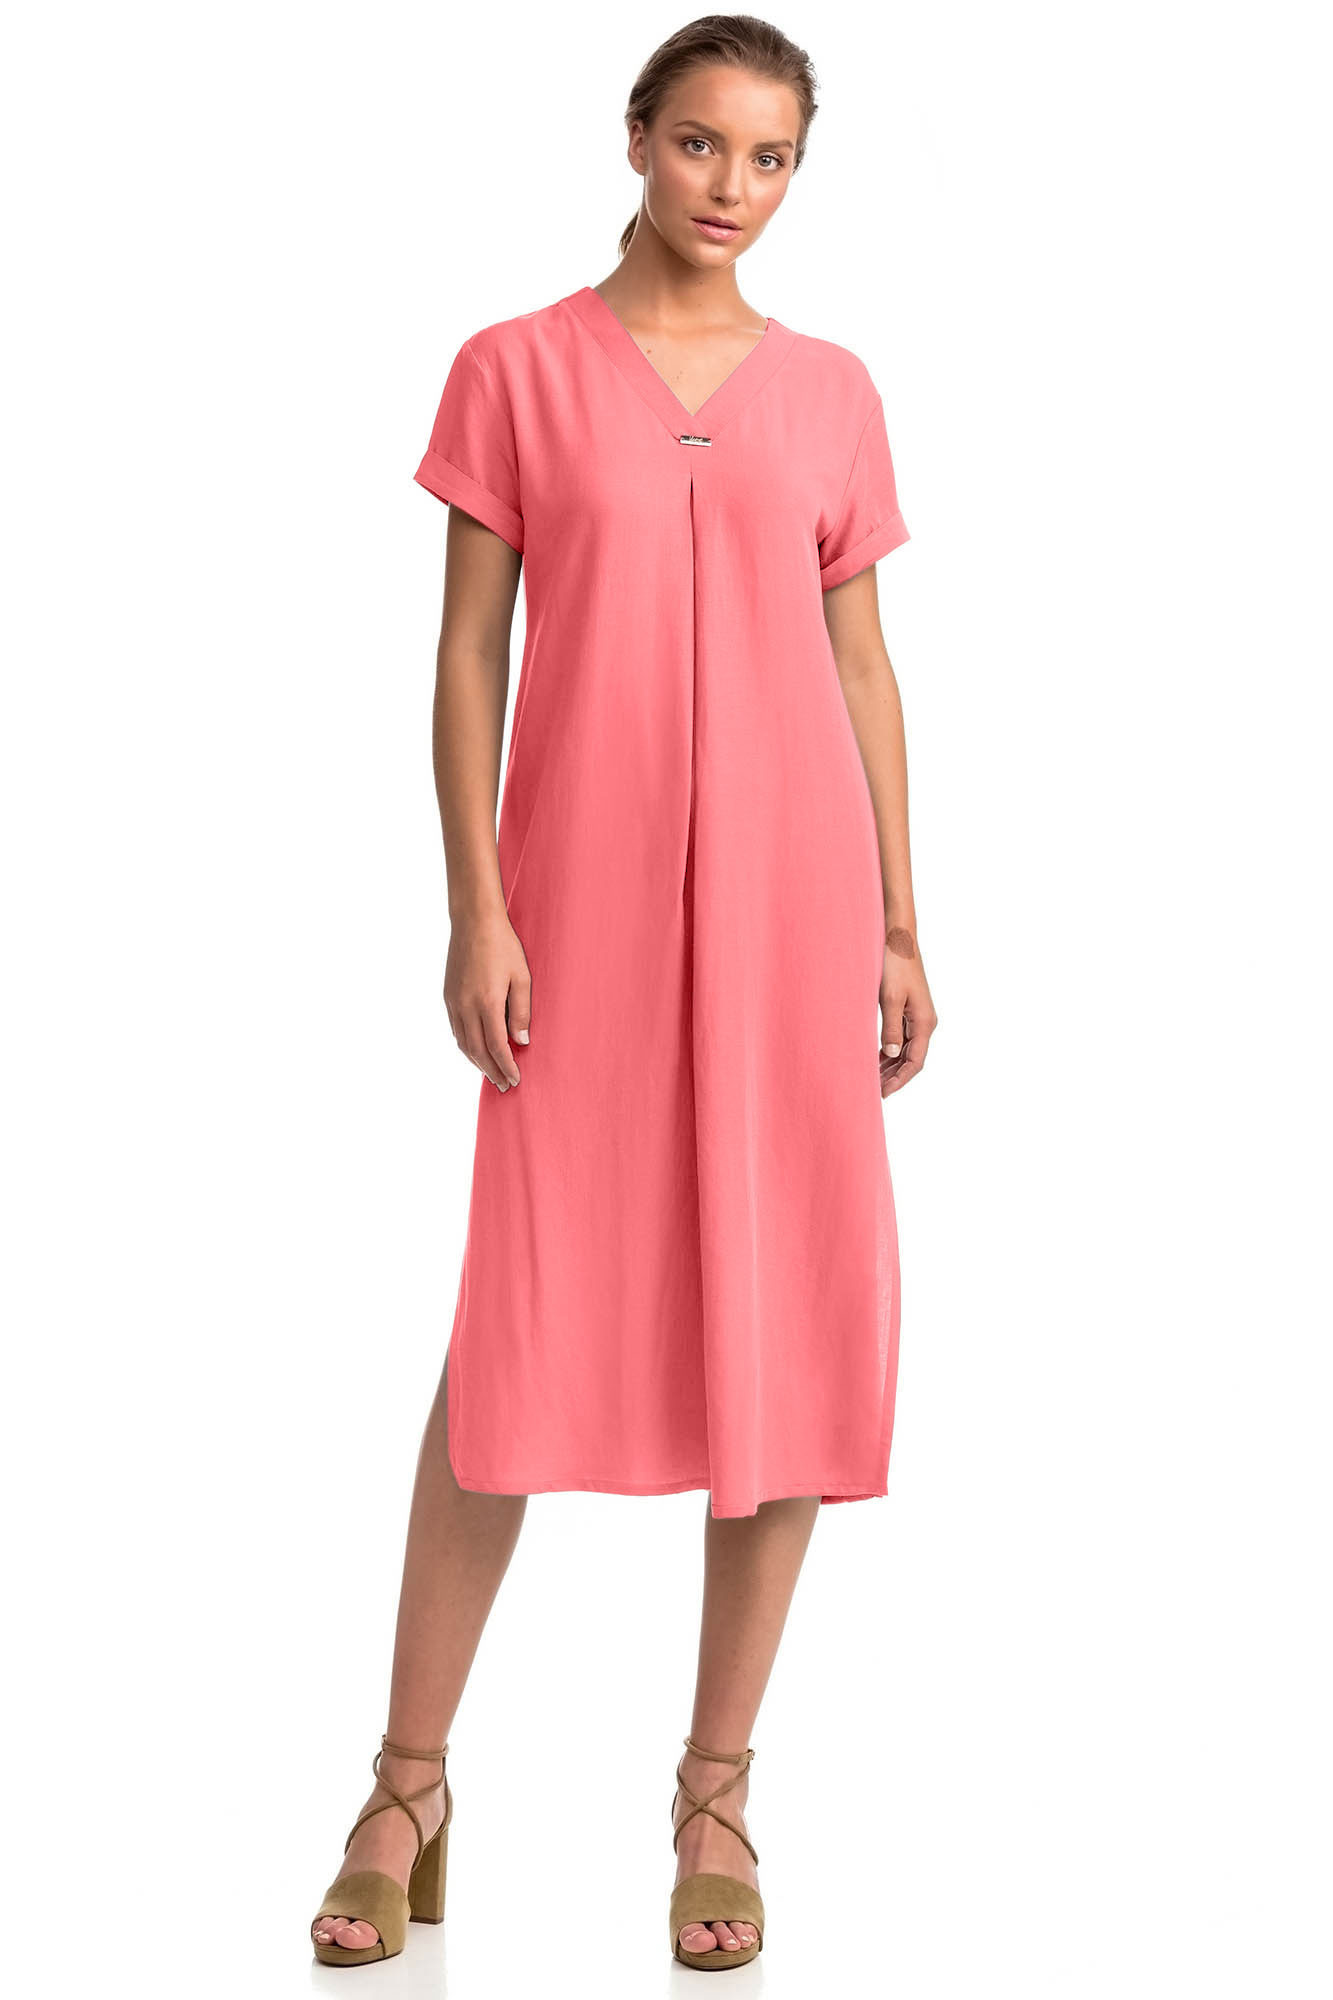 Vamp - Letní dámské šaty 14440 - Vamp coral sugar L